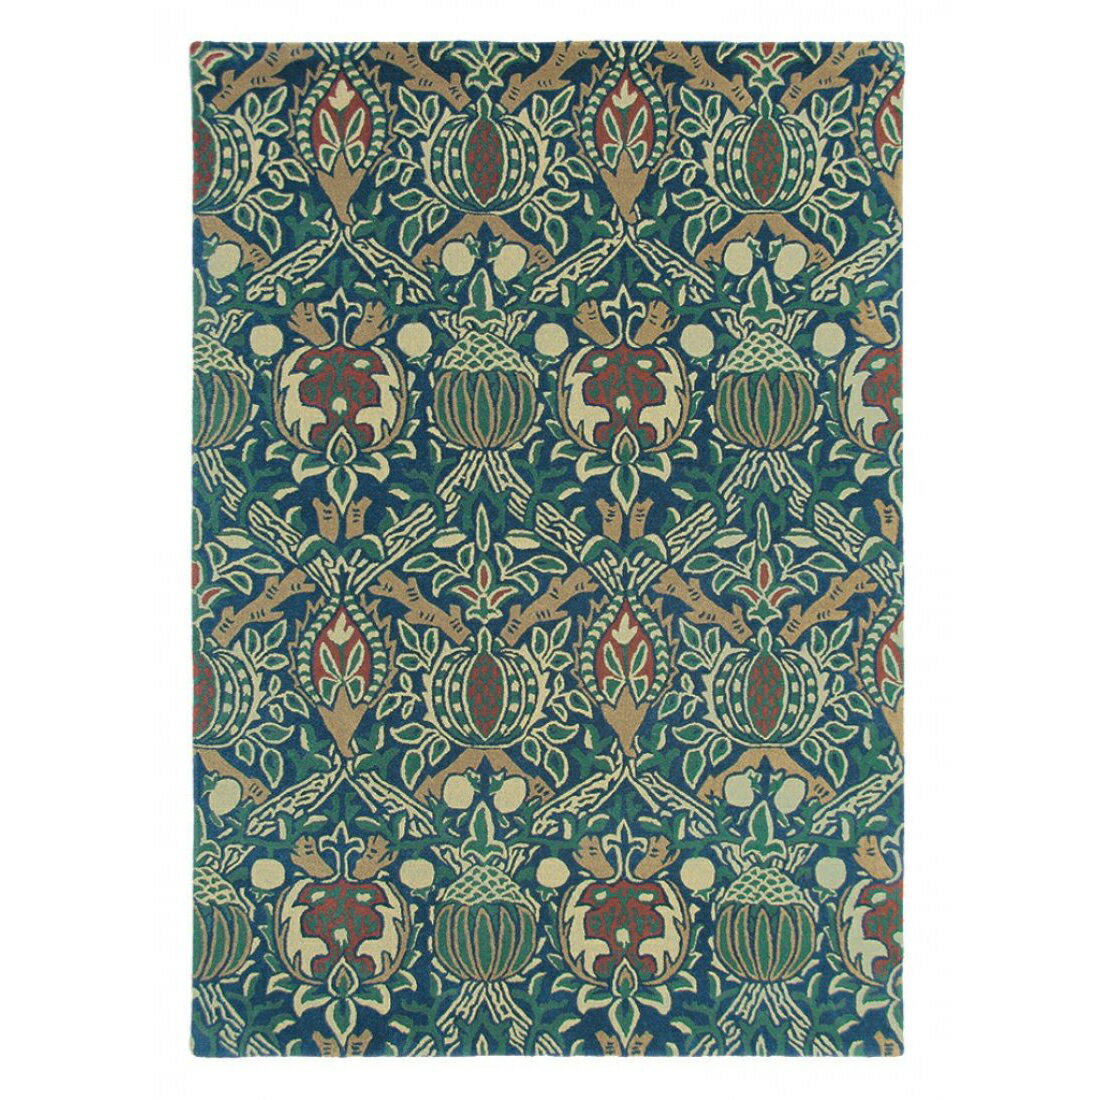 英國Morris&Co羊毛地毯 GRANDA 27608  古典圖騰 經典優雅